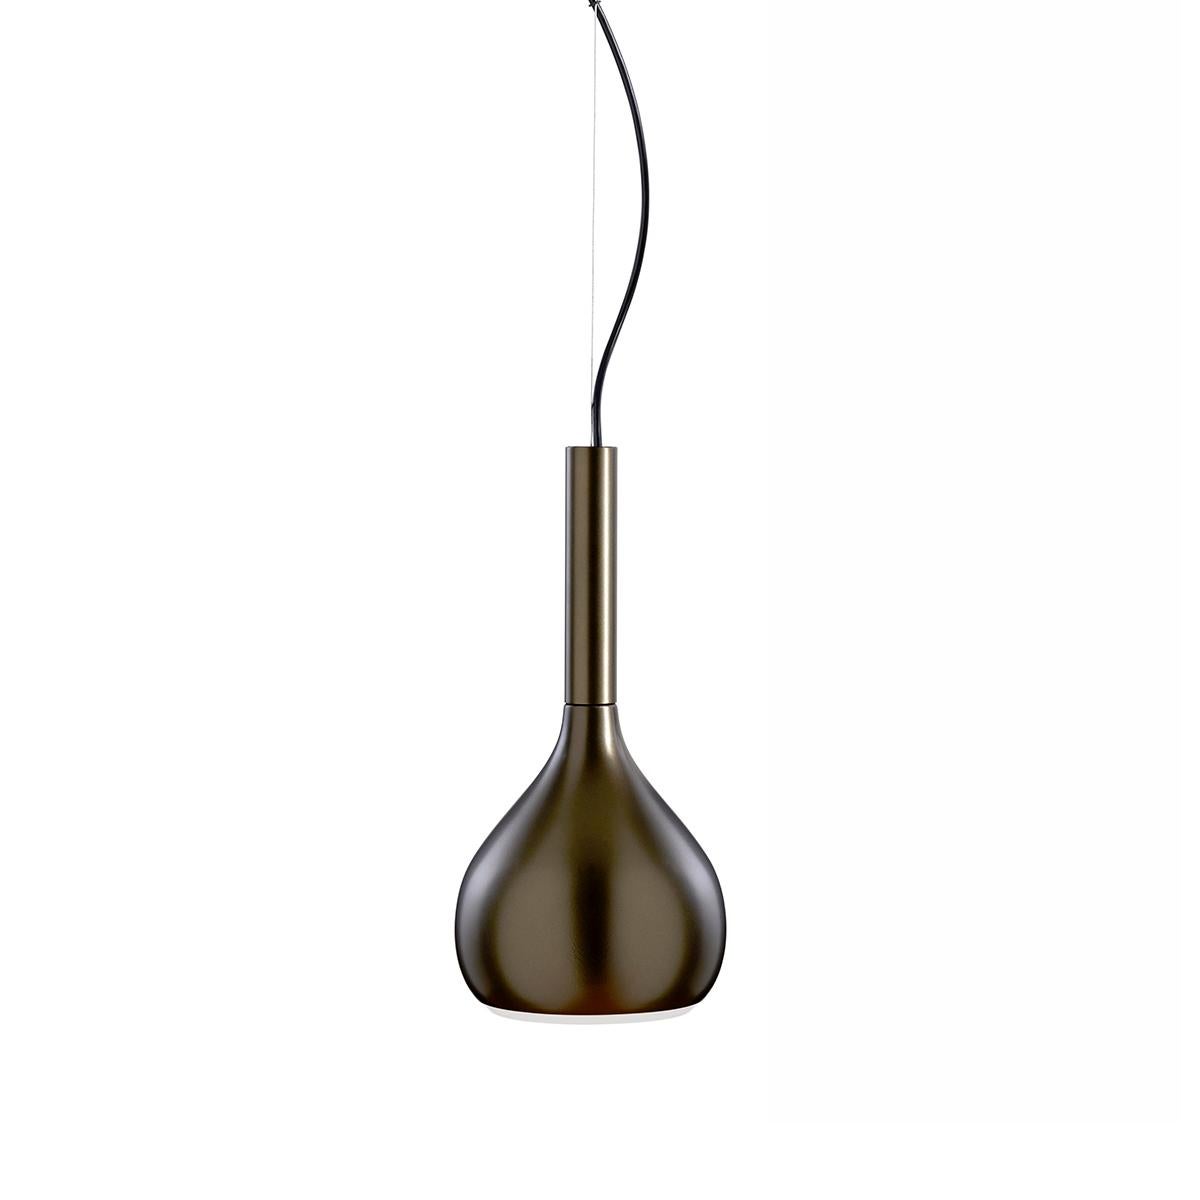 Italian Angeletti e Ruzza Suspension Lamp 'Lys' Anodic Bronze by Oluce For Sale